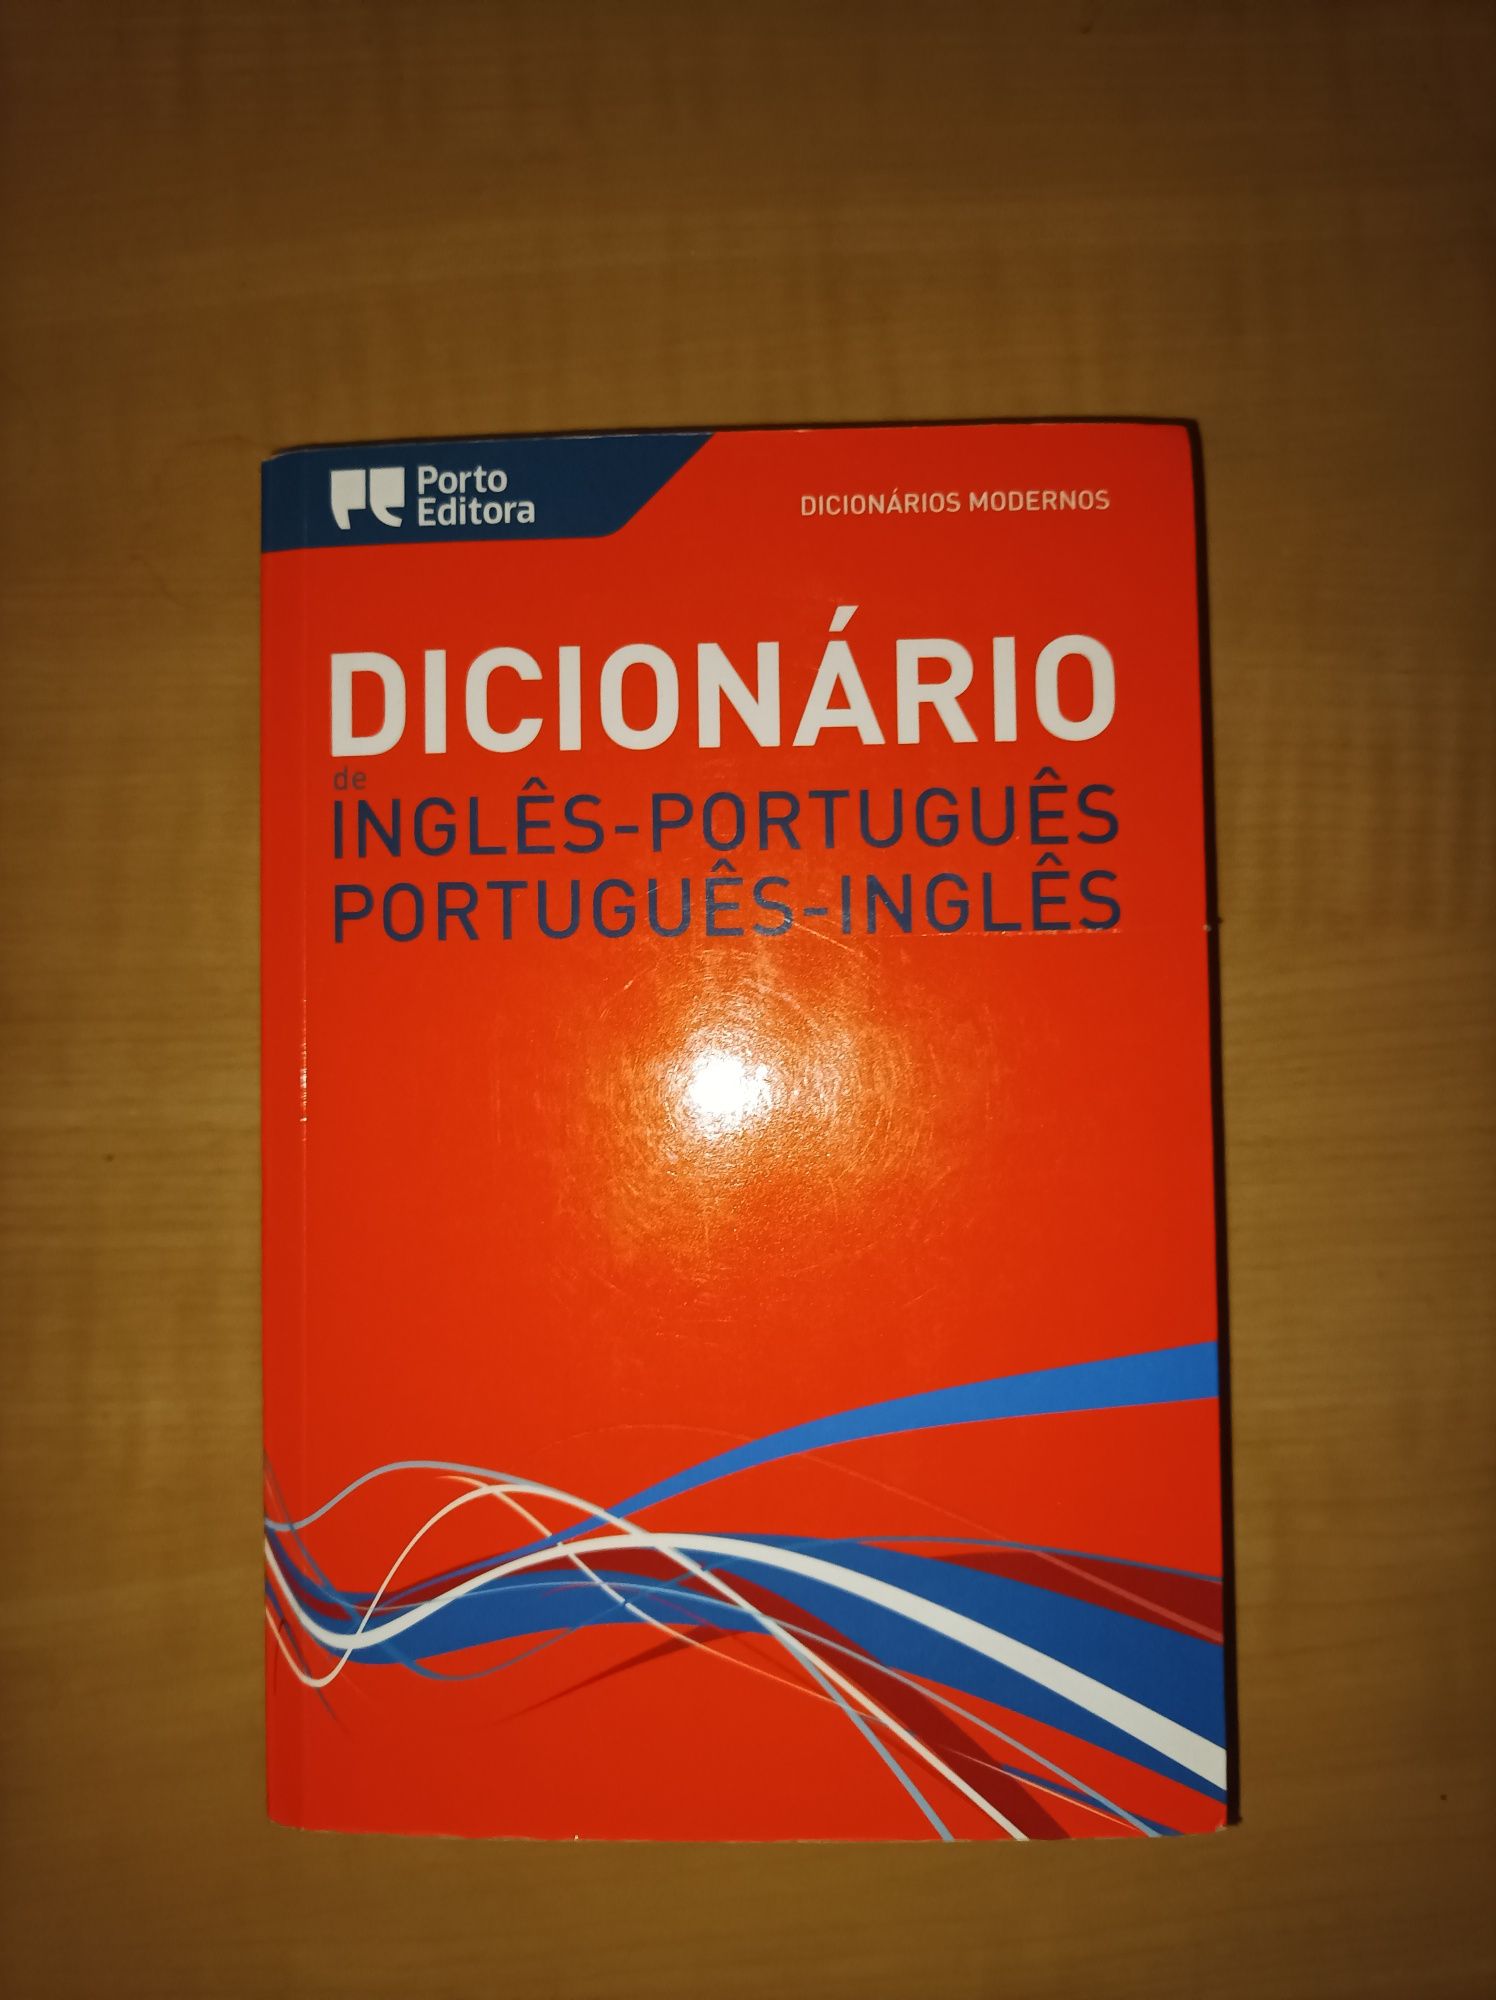 Dicionário de Inglês - Português/Português - Inglês (Porto Editora)